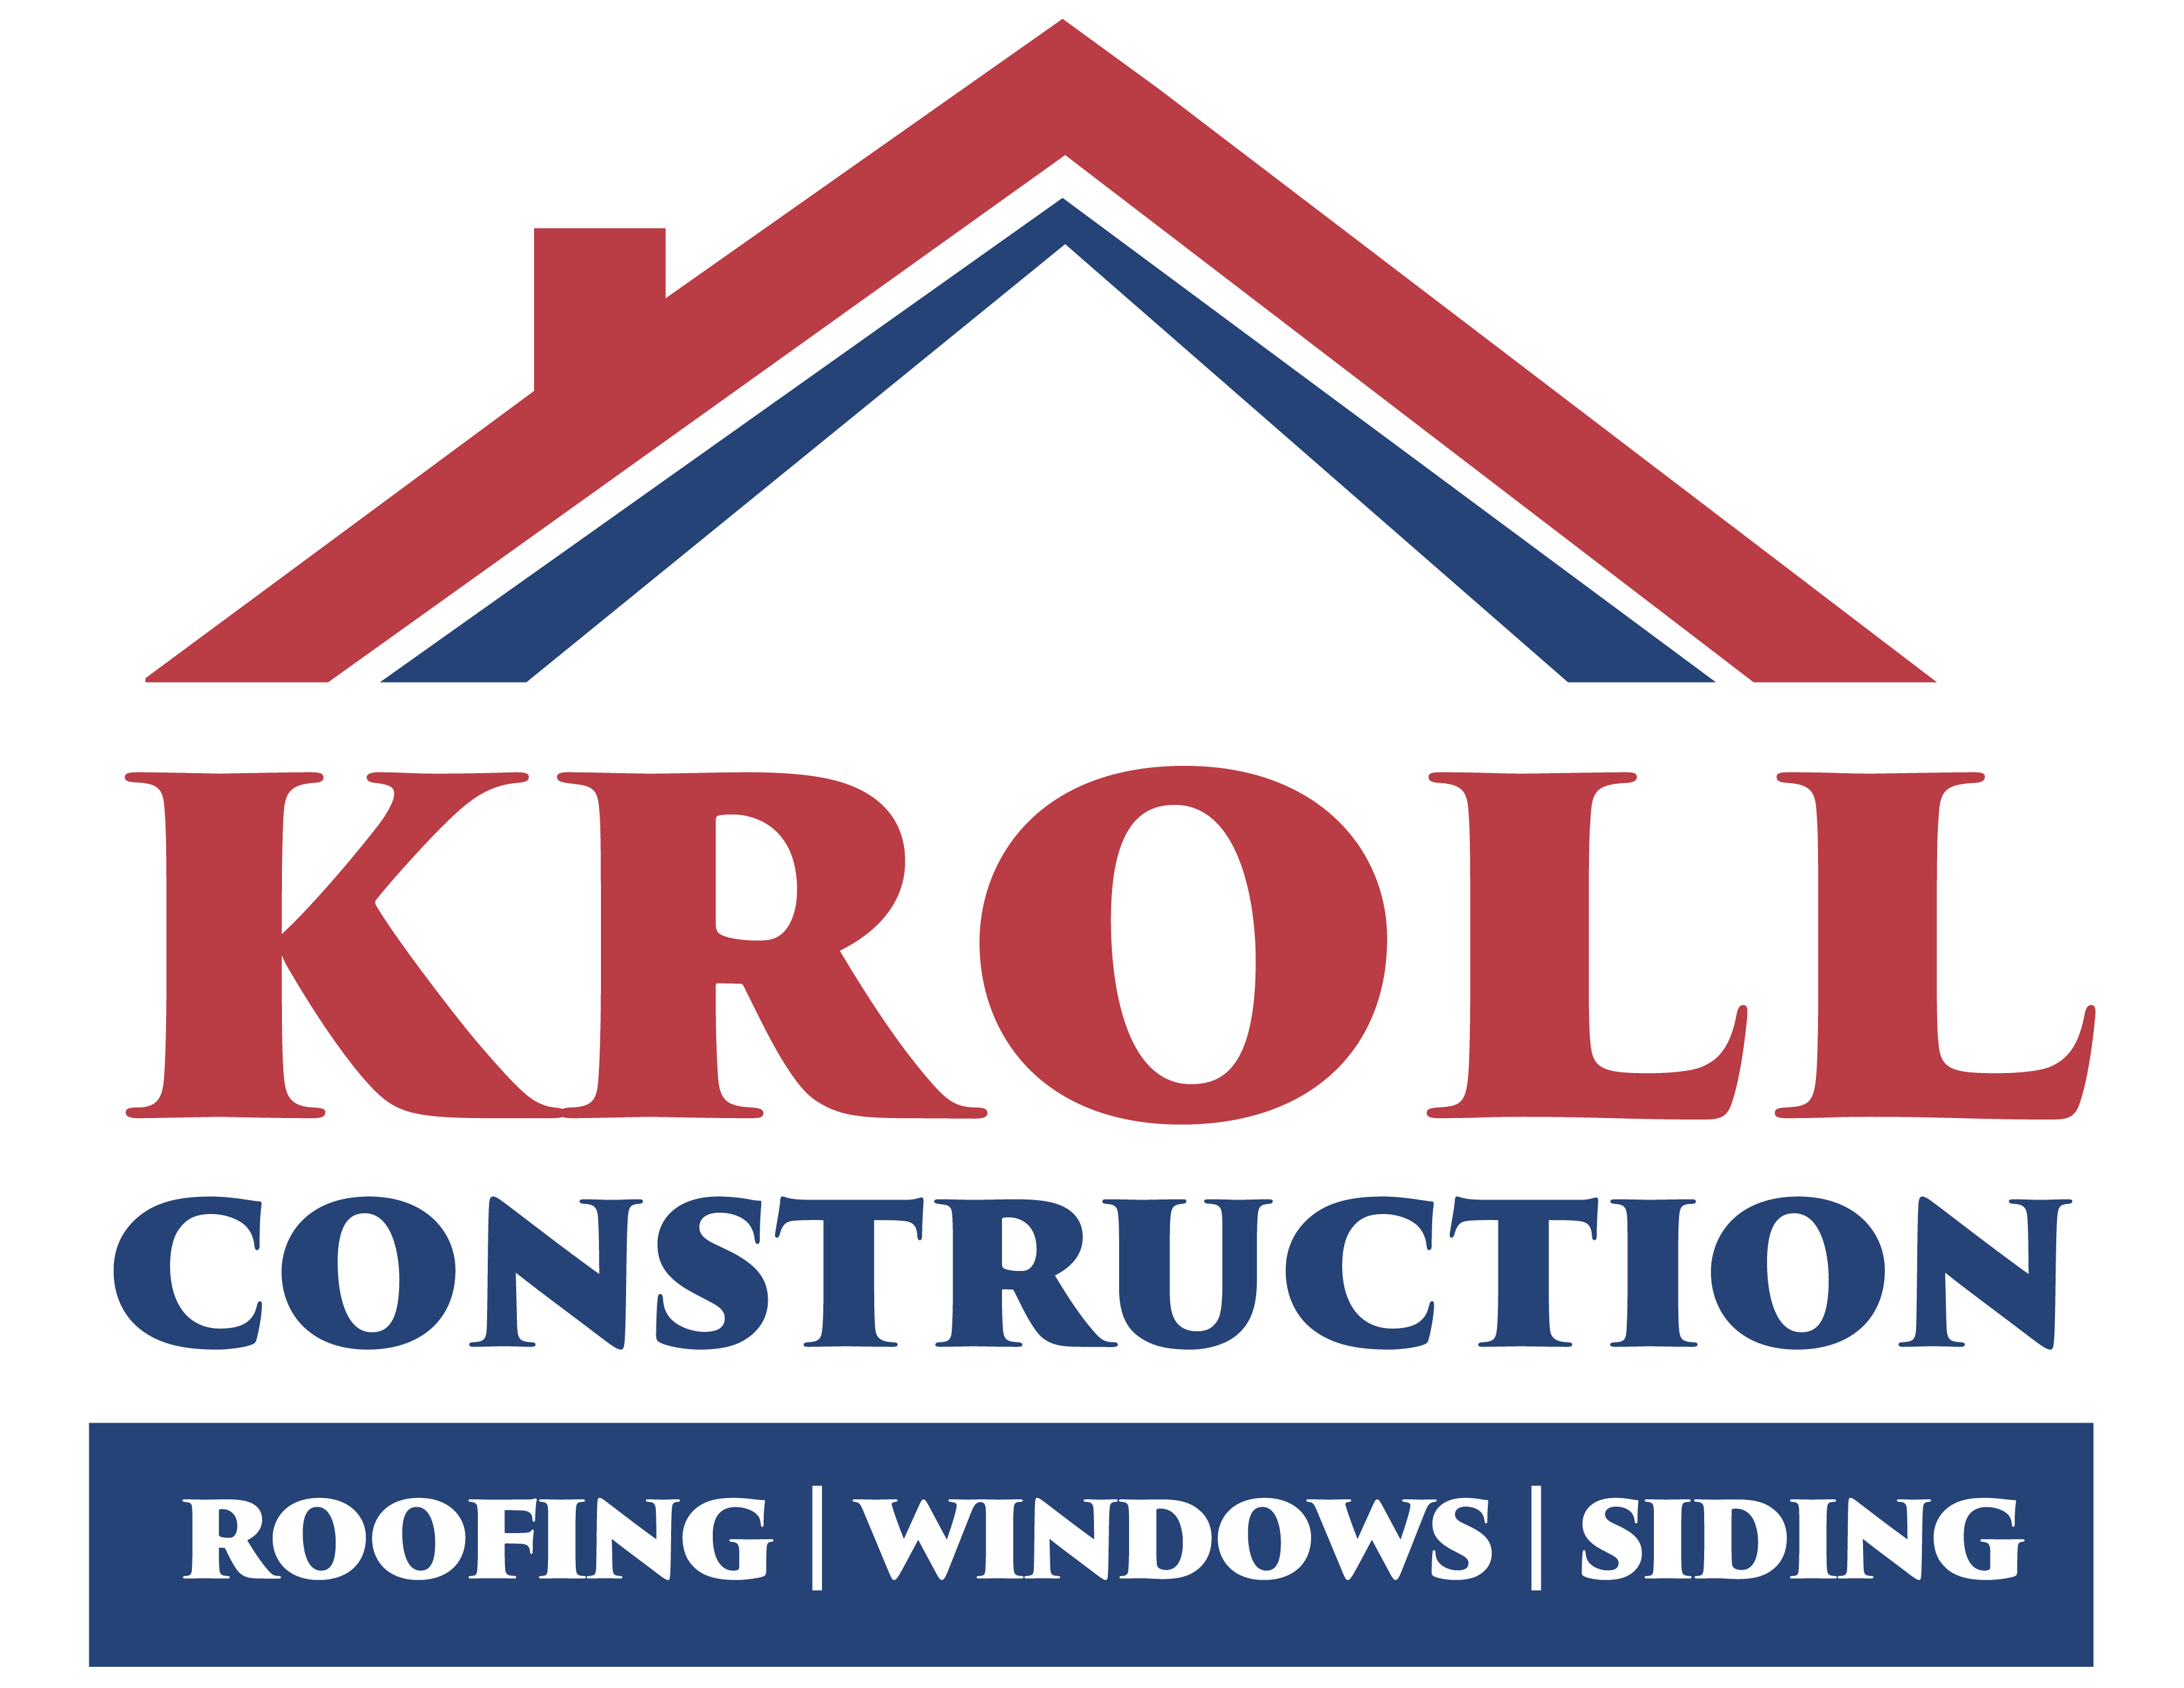 Kroll Construction Logo